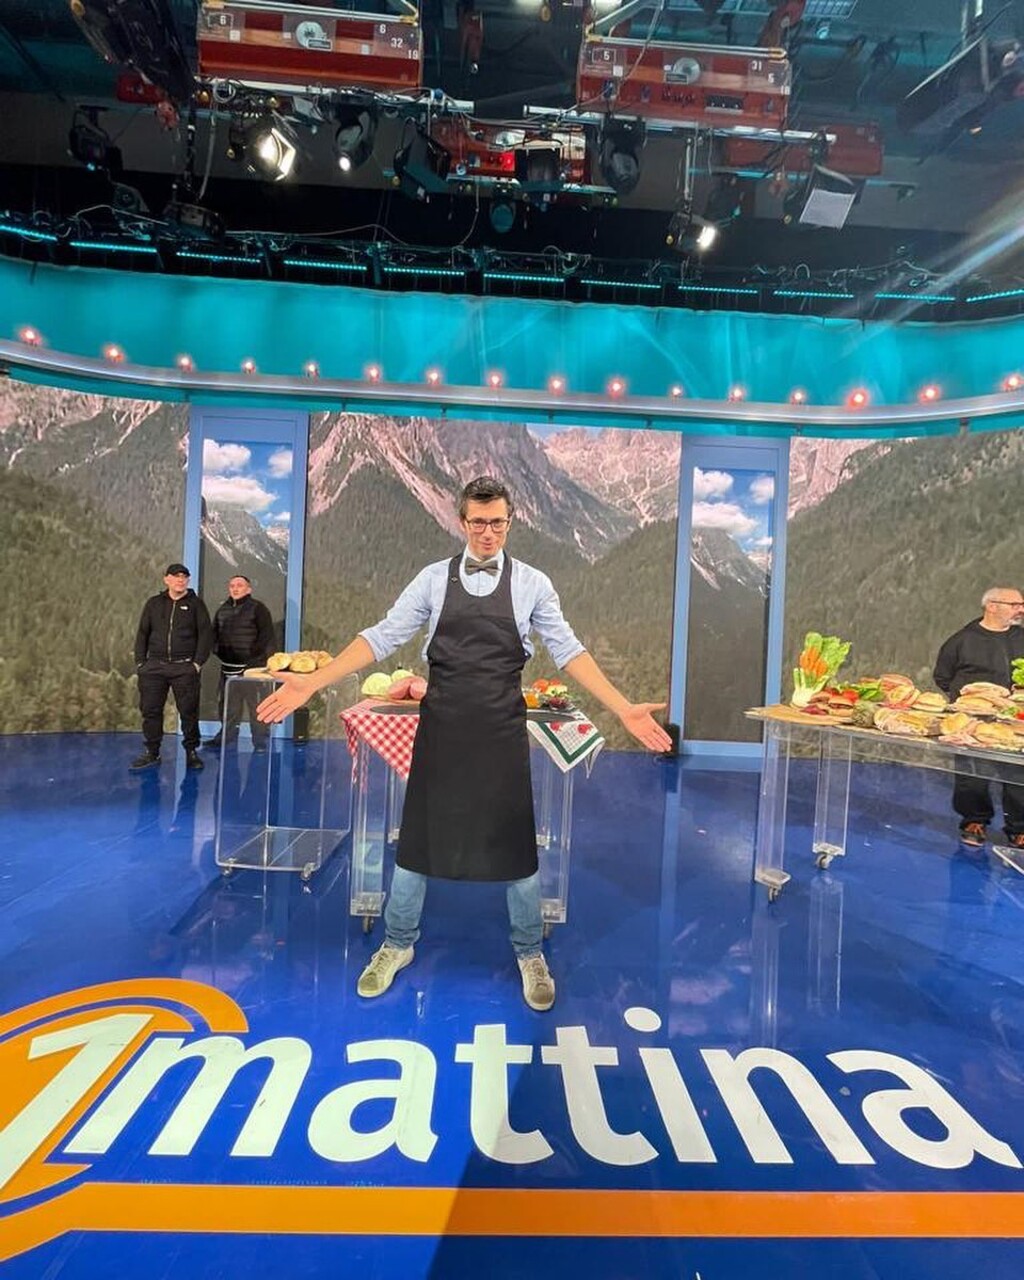 Sanduíche gourmet: chef/não chef Daniele Reponi convidada no programa de televisão da RAI “1Mattina”